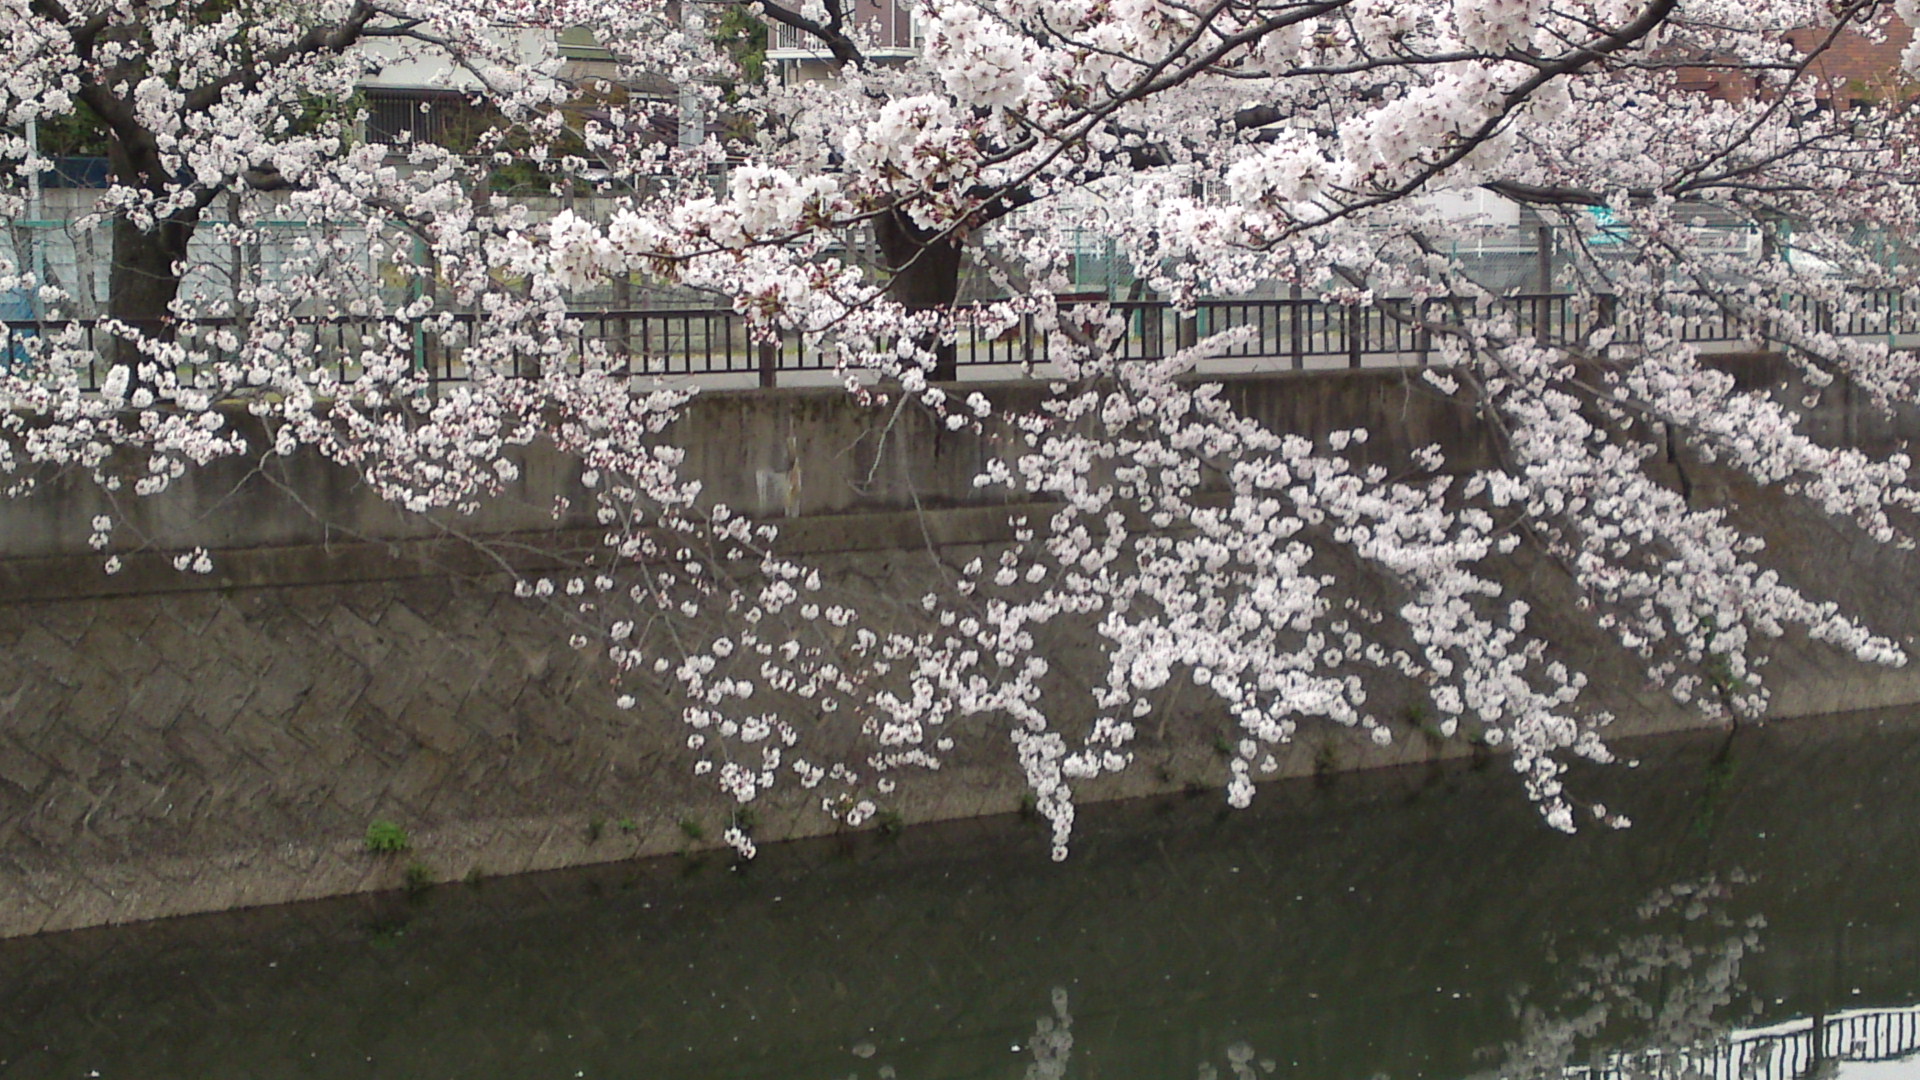 フリー写真素材集 真間川の桜並木と流域の桜の名所１